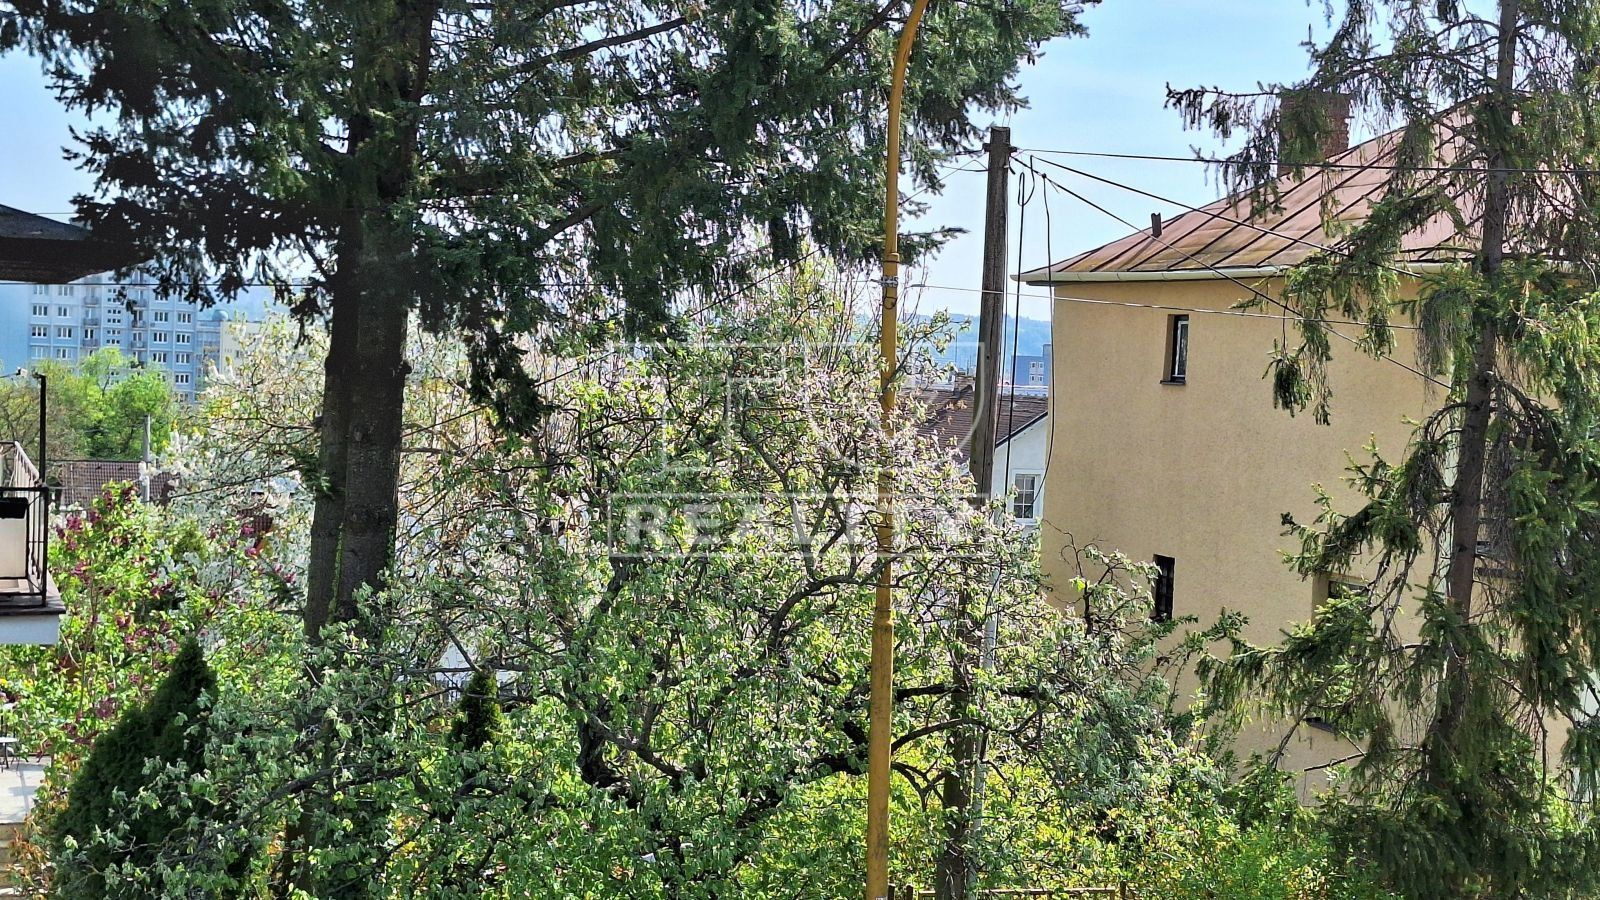 Tureality ponúka na predaj 3.izbový rodinný dom v mestskej časti Košice-Sever.